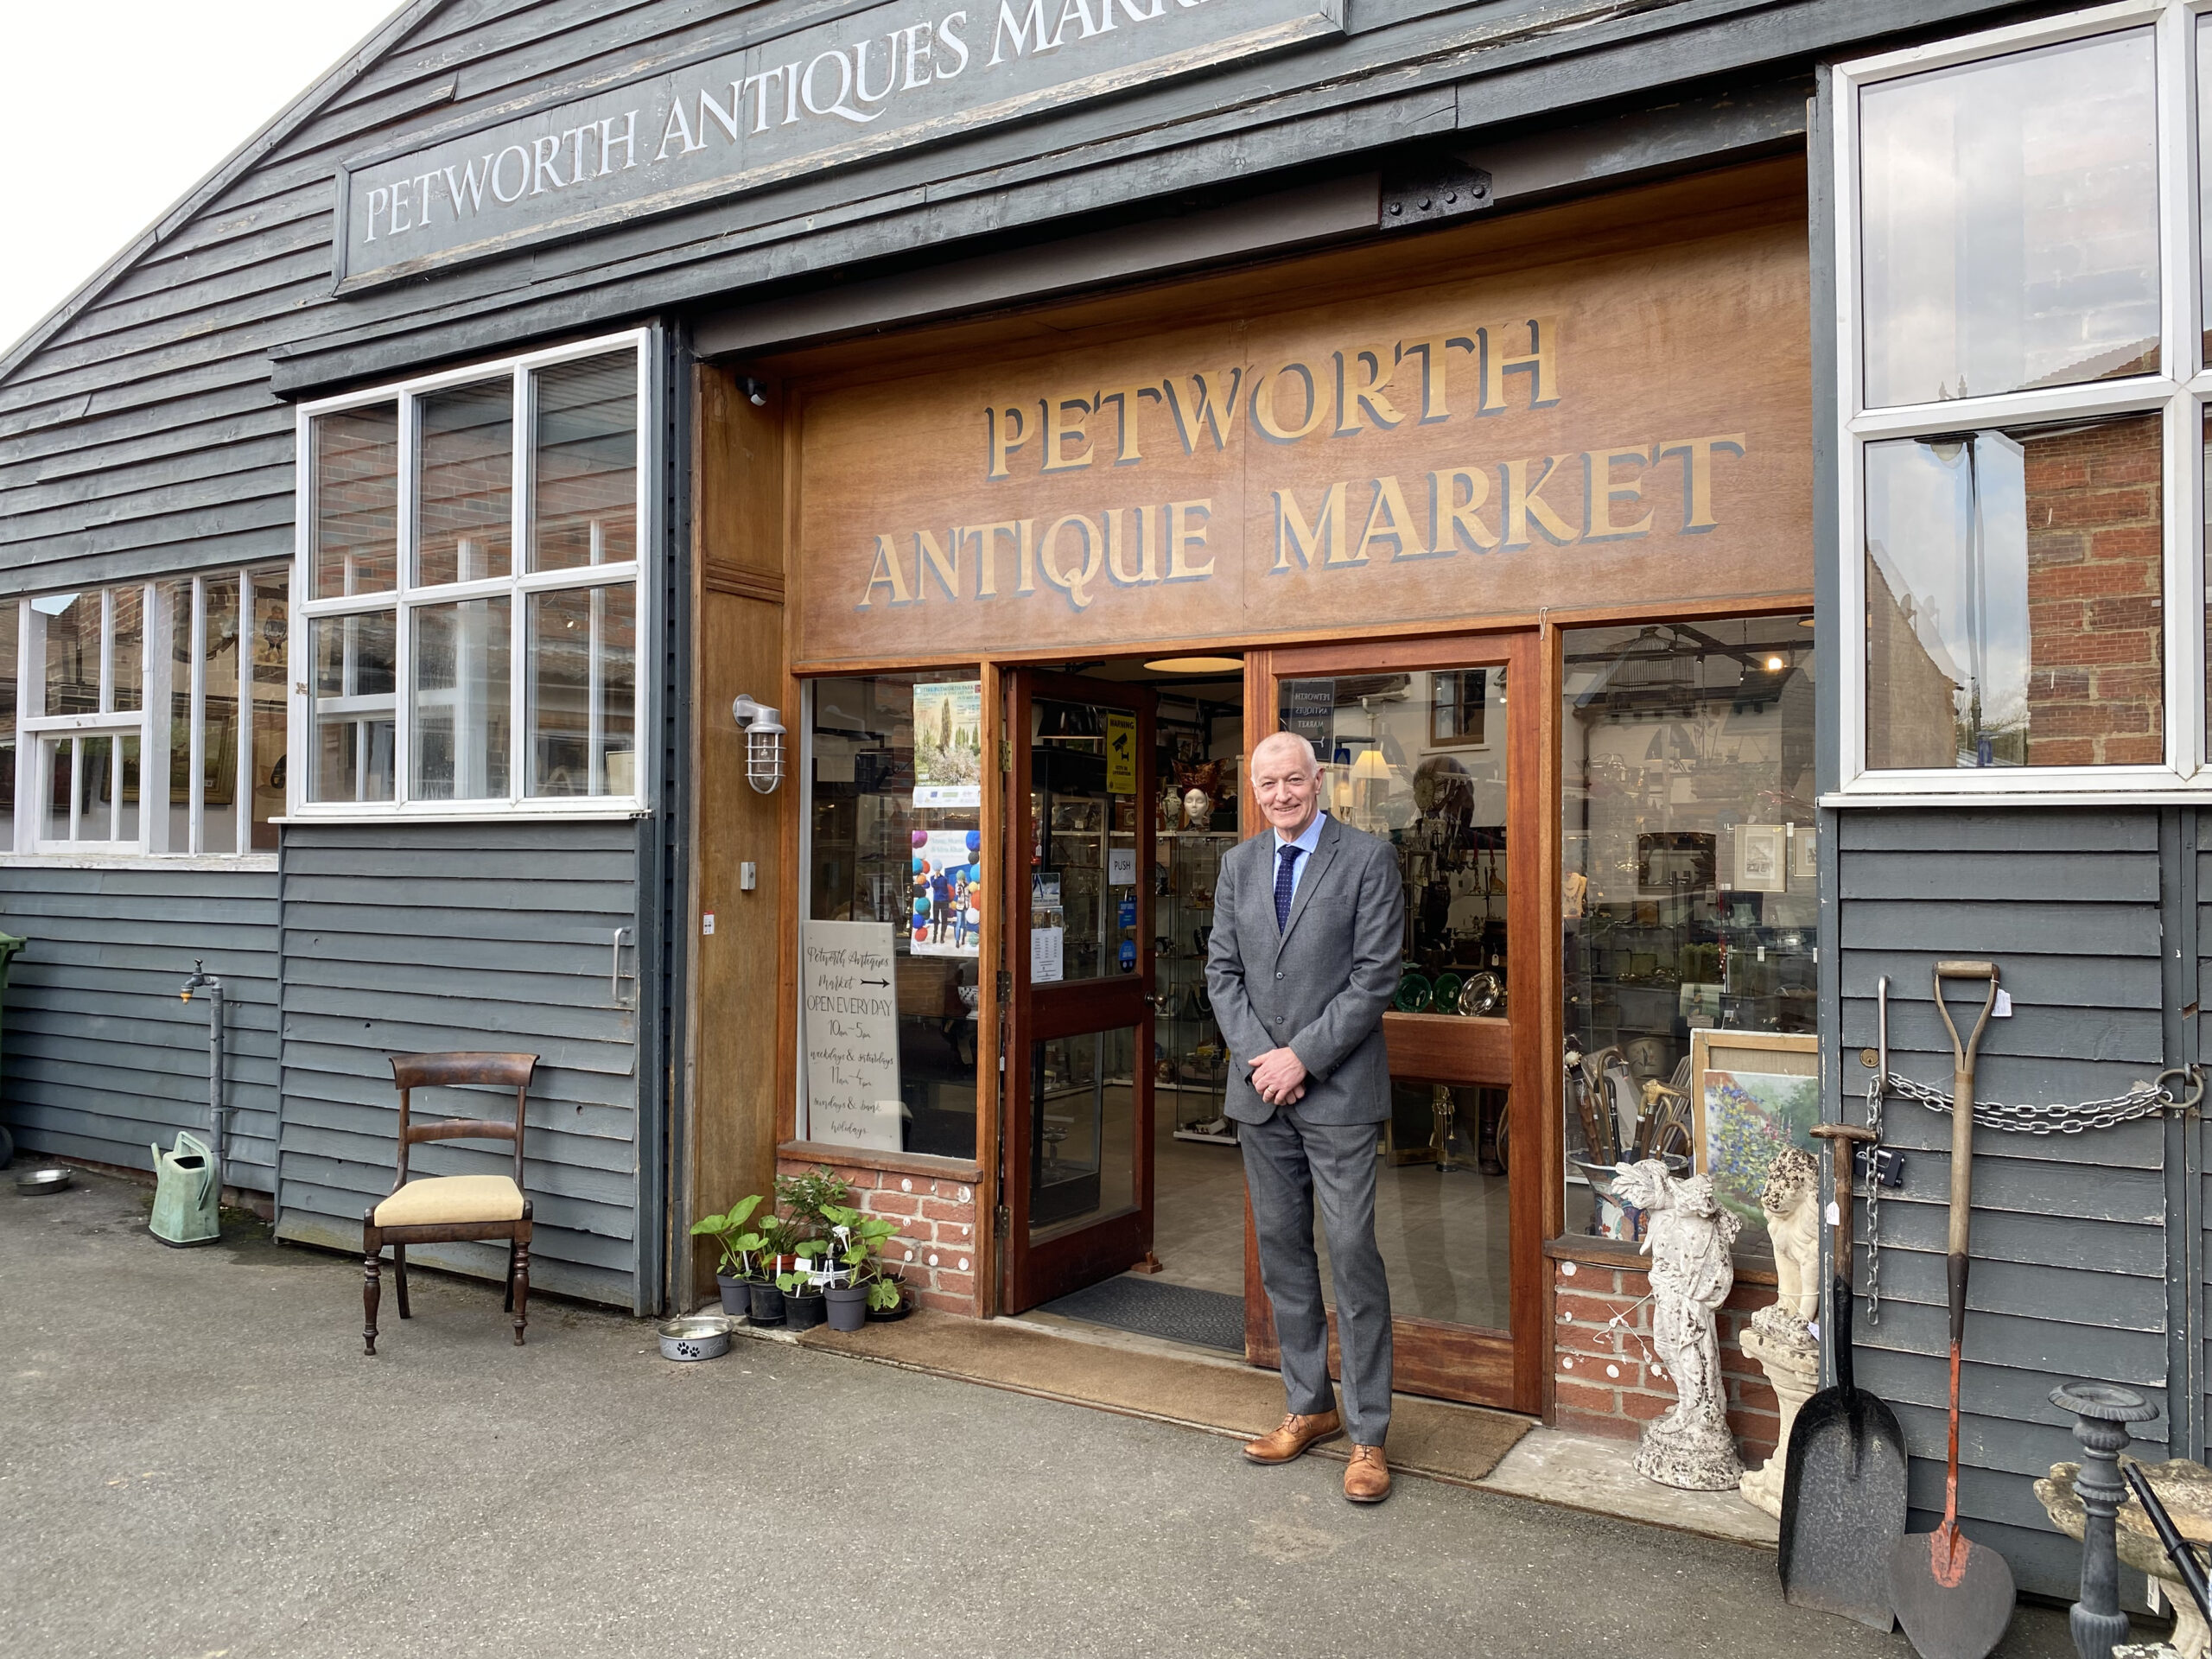 Andrew Seggie, Petworth Antique Market